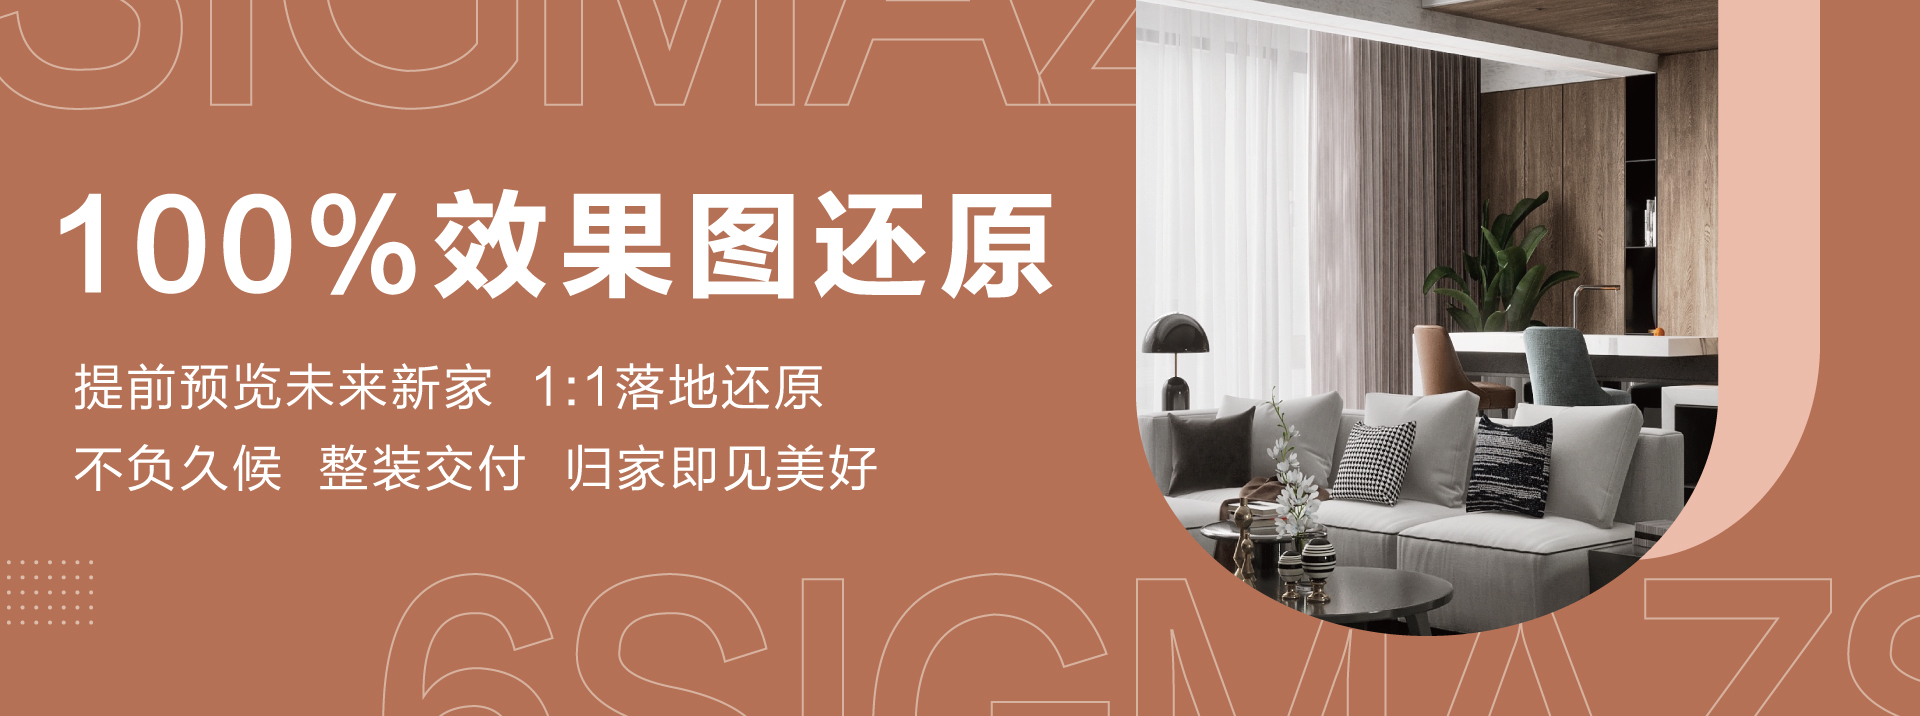 免费不卡2018中文版字幕六西格玛装饰活动海报